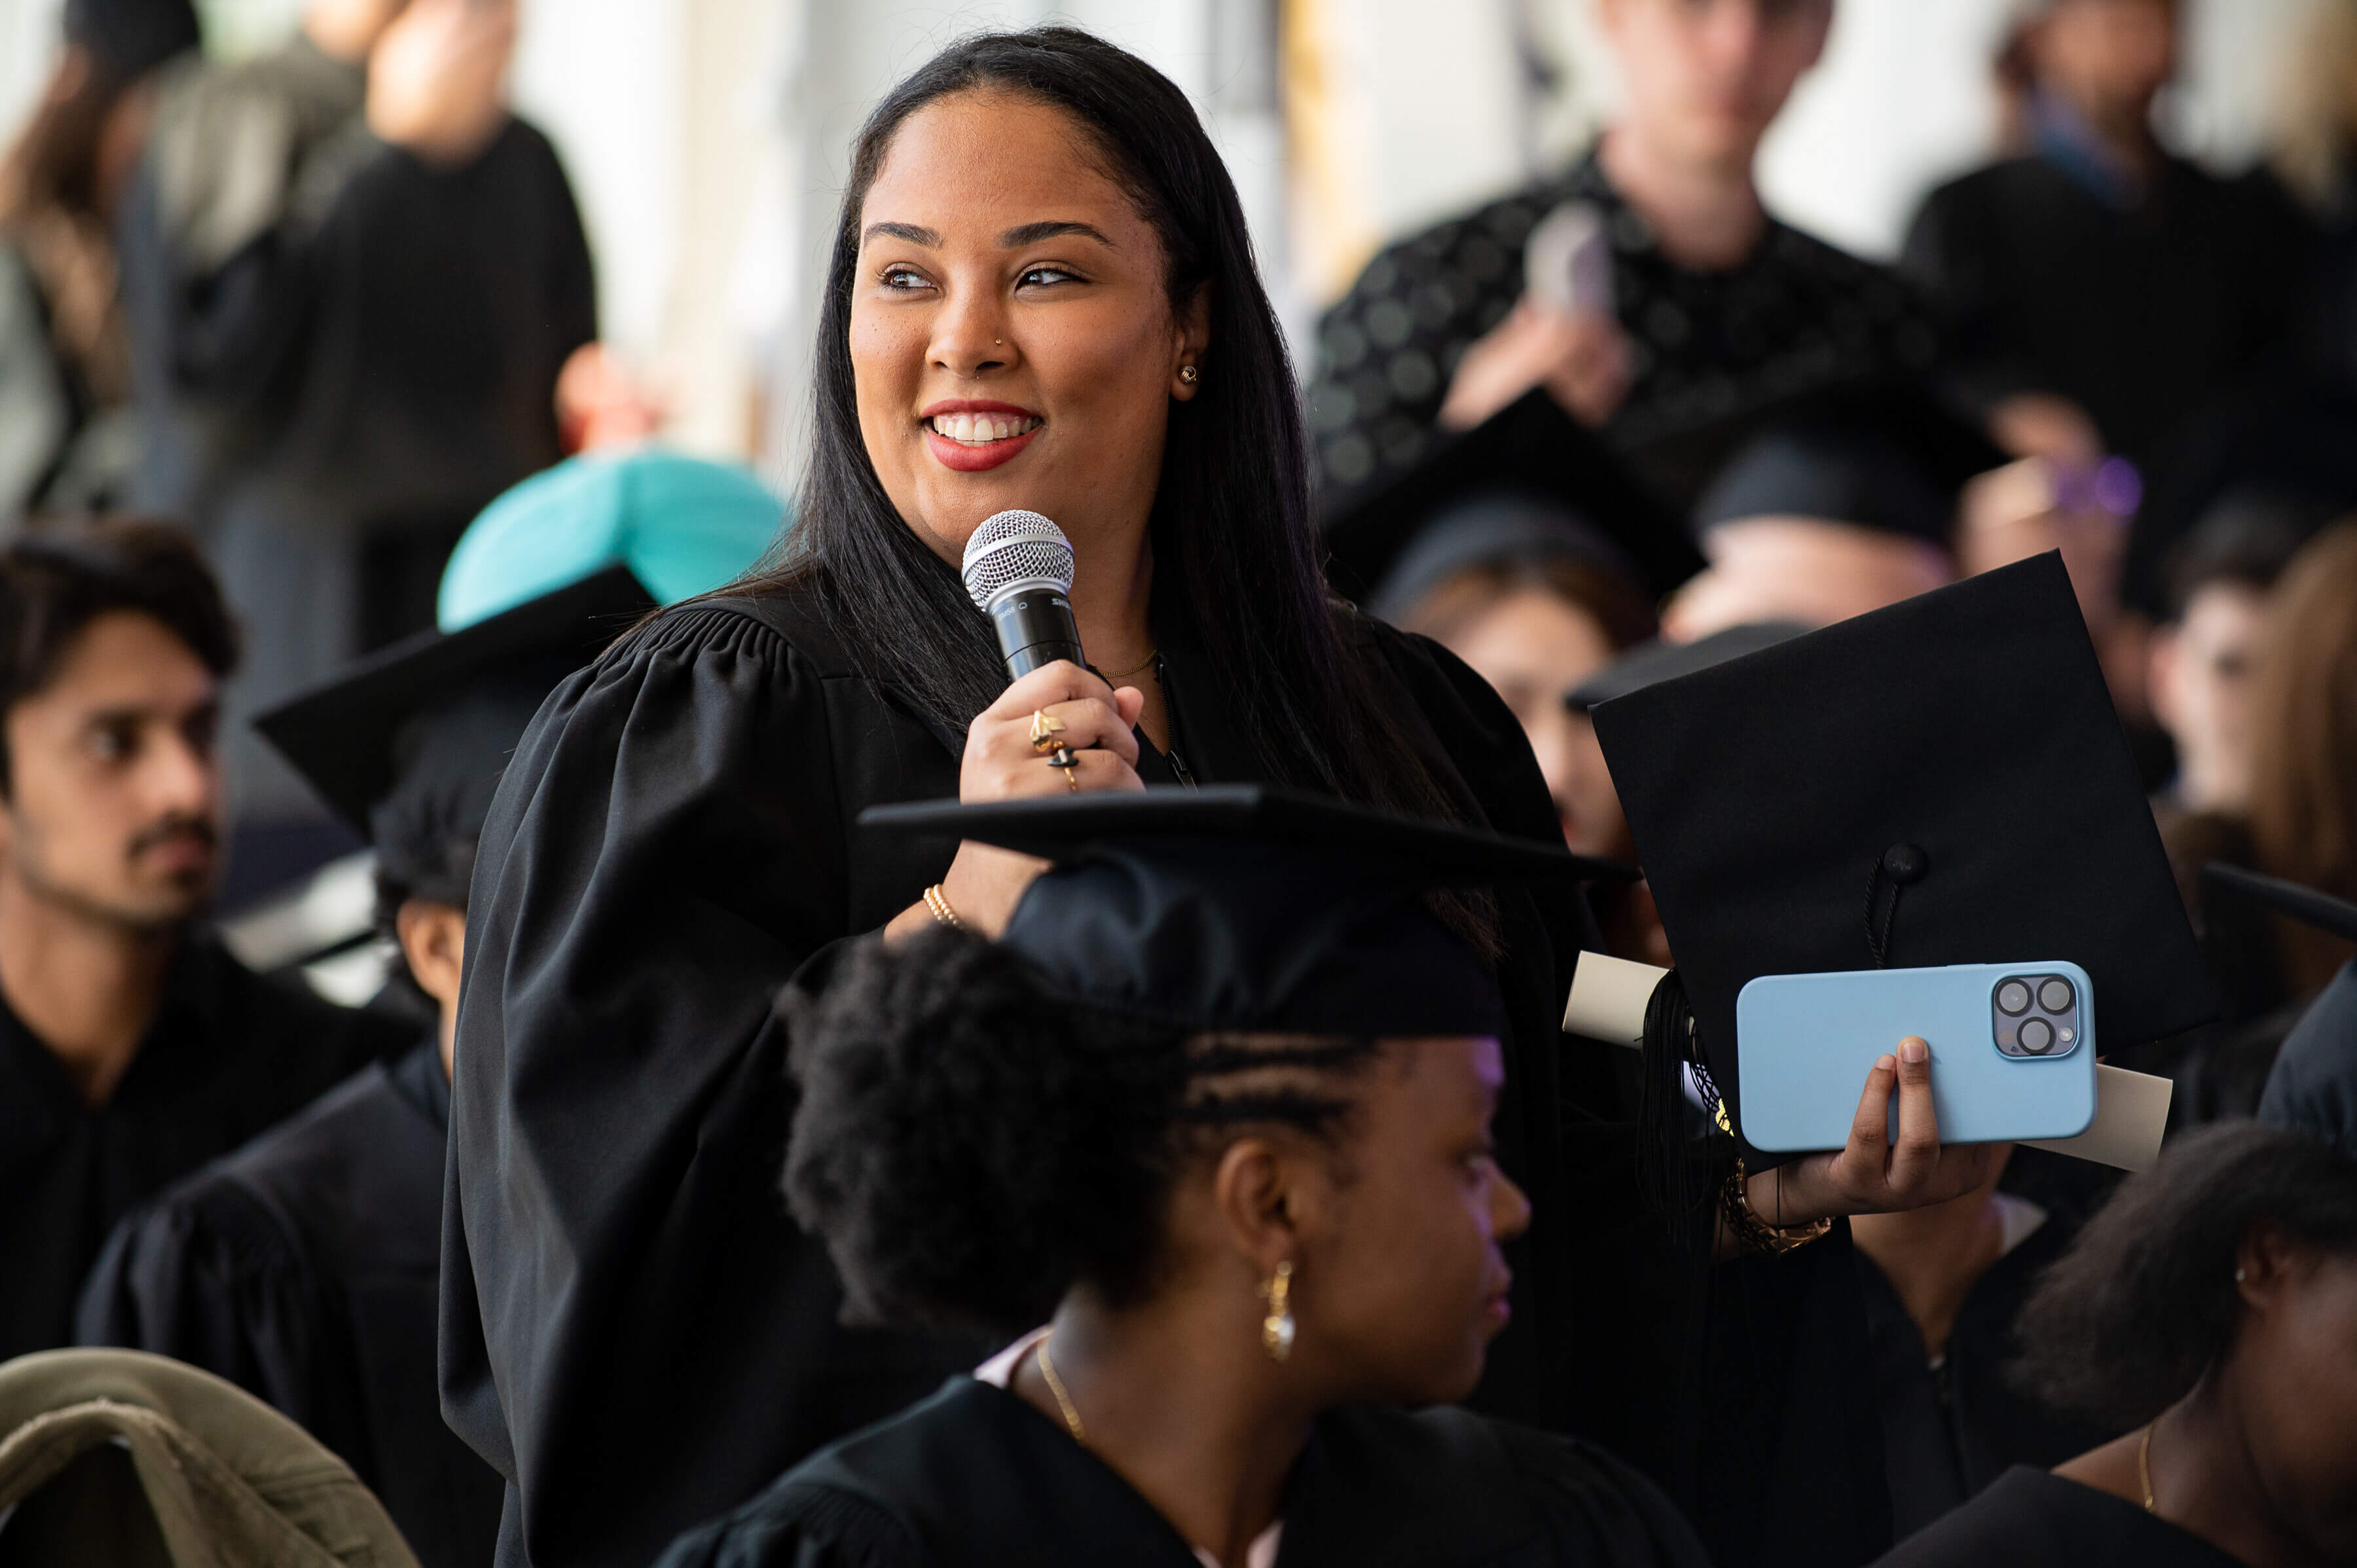 Une femme posée prononce un discours lors de sa remise de diplôme, ses pairs en toges écoutant attentivement.